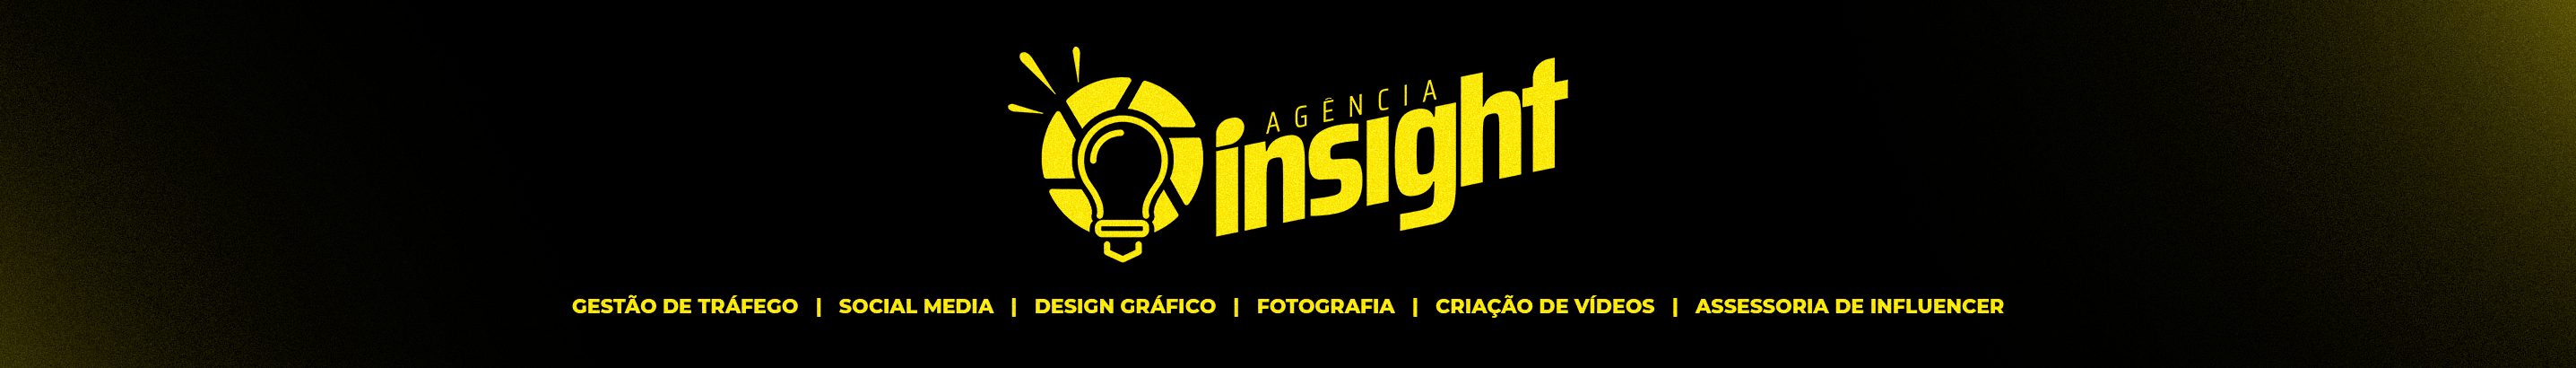 Profil-Banner von Agência Insight